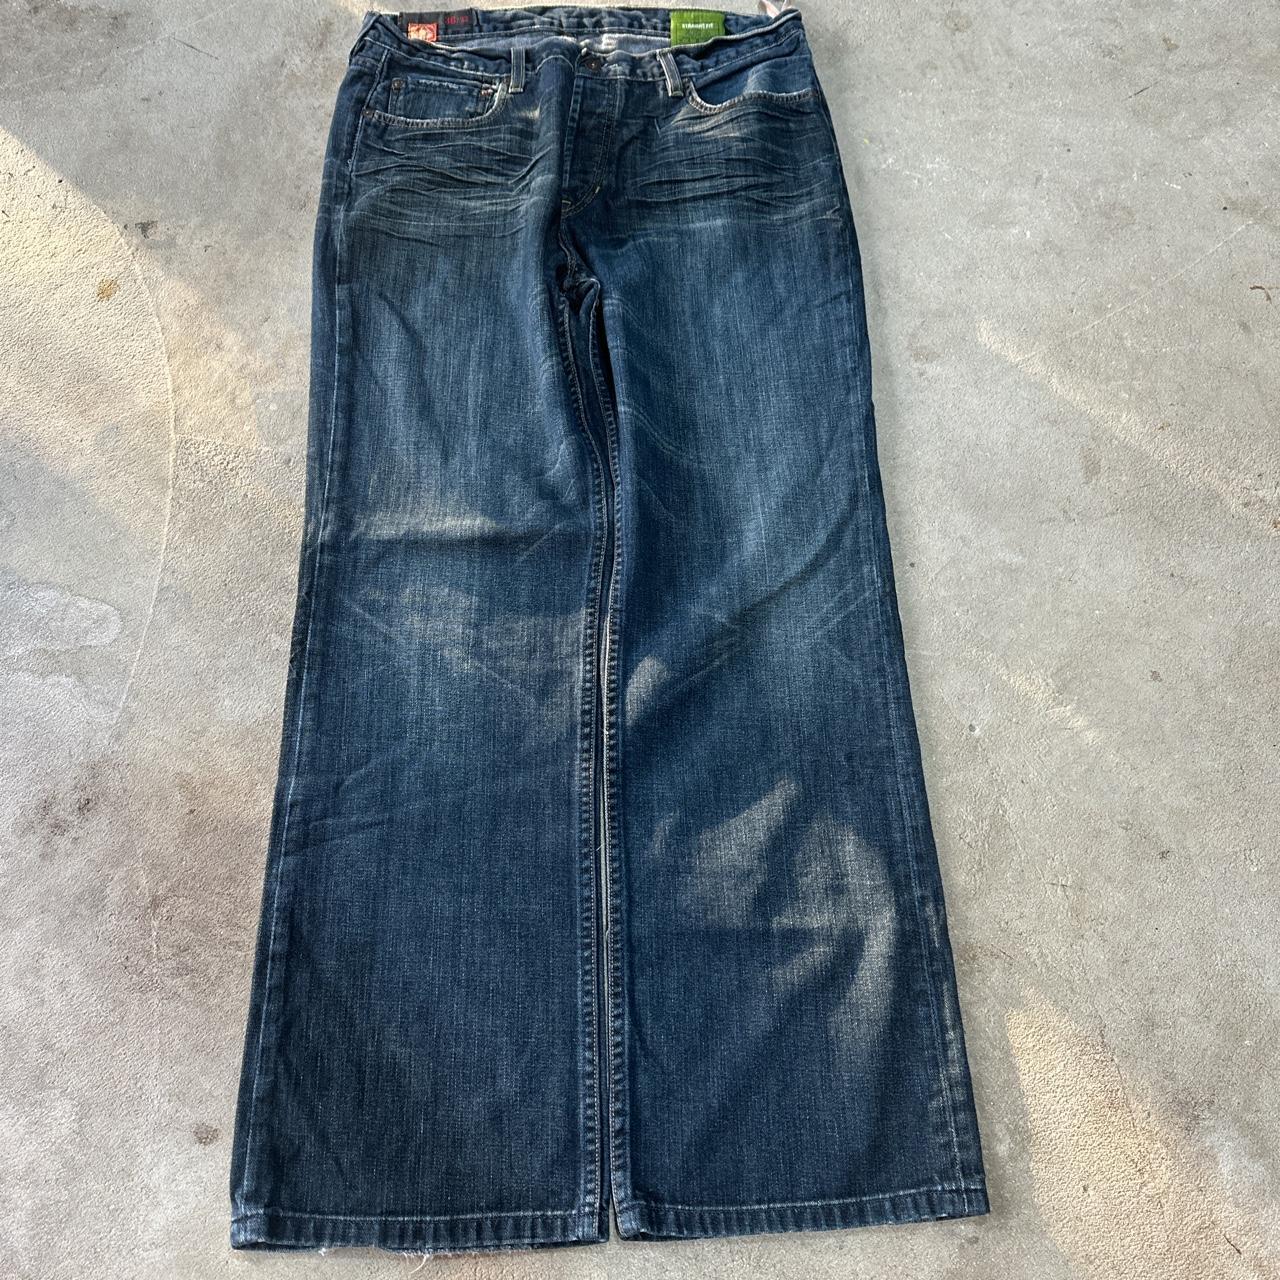 Vintage BAGGY 1969 Jeans SUPER BAGGY Size:... - Depop